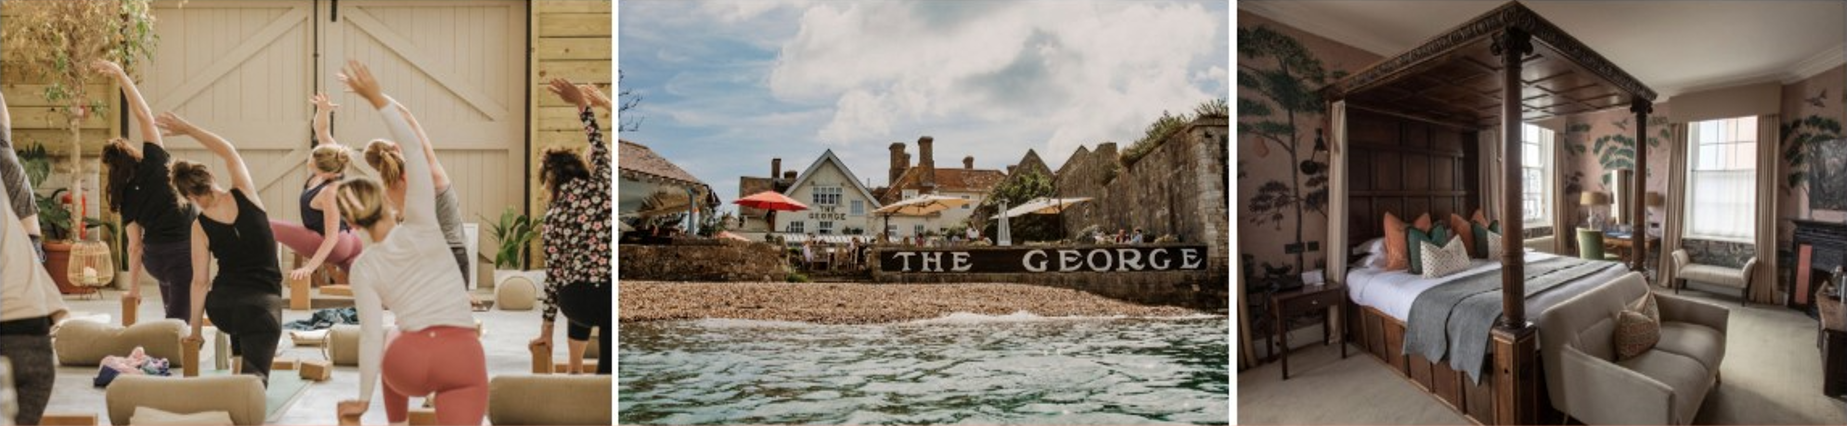 George Hotel Yarmouth